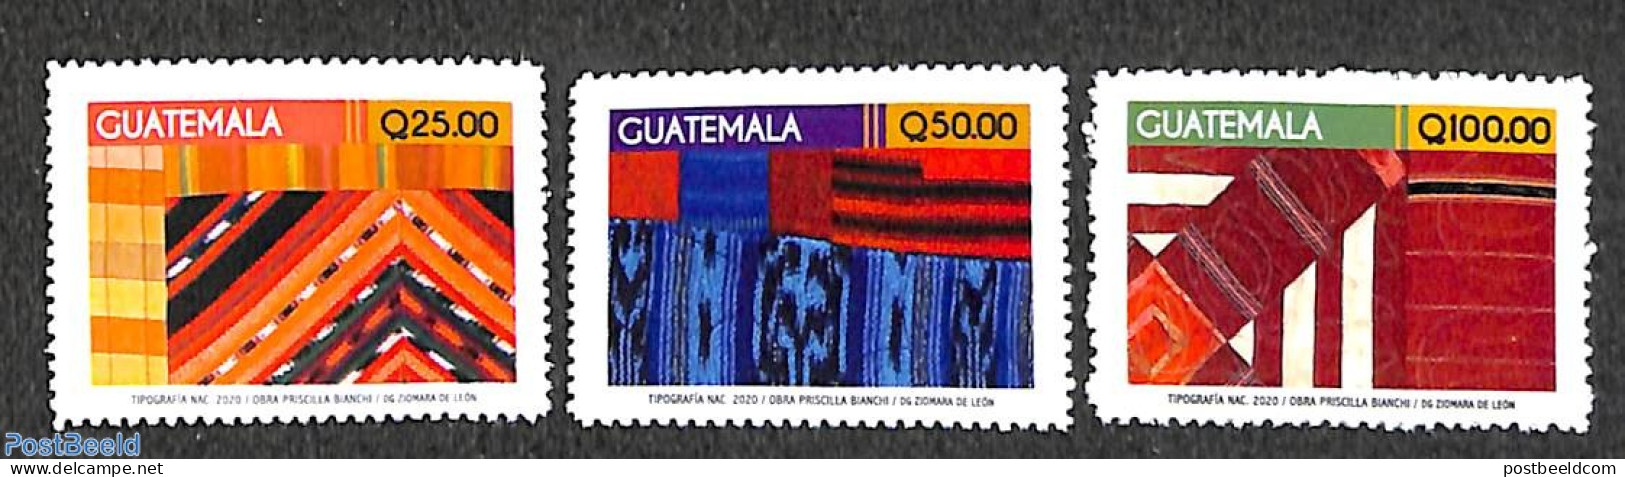 Guatemala 2020 Definitives 3v, Mint NH, Various - Textiles - Textil